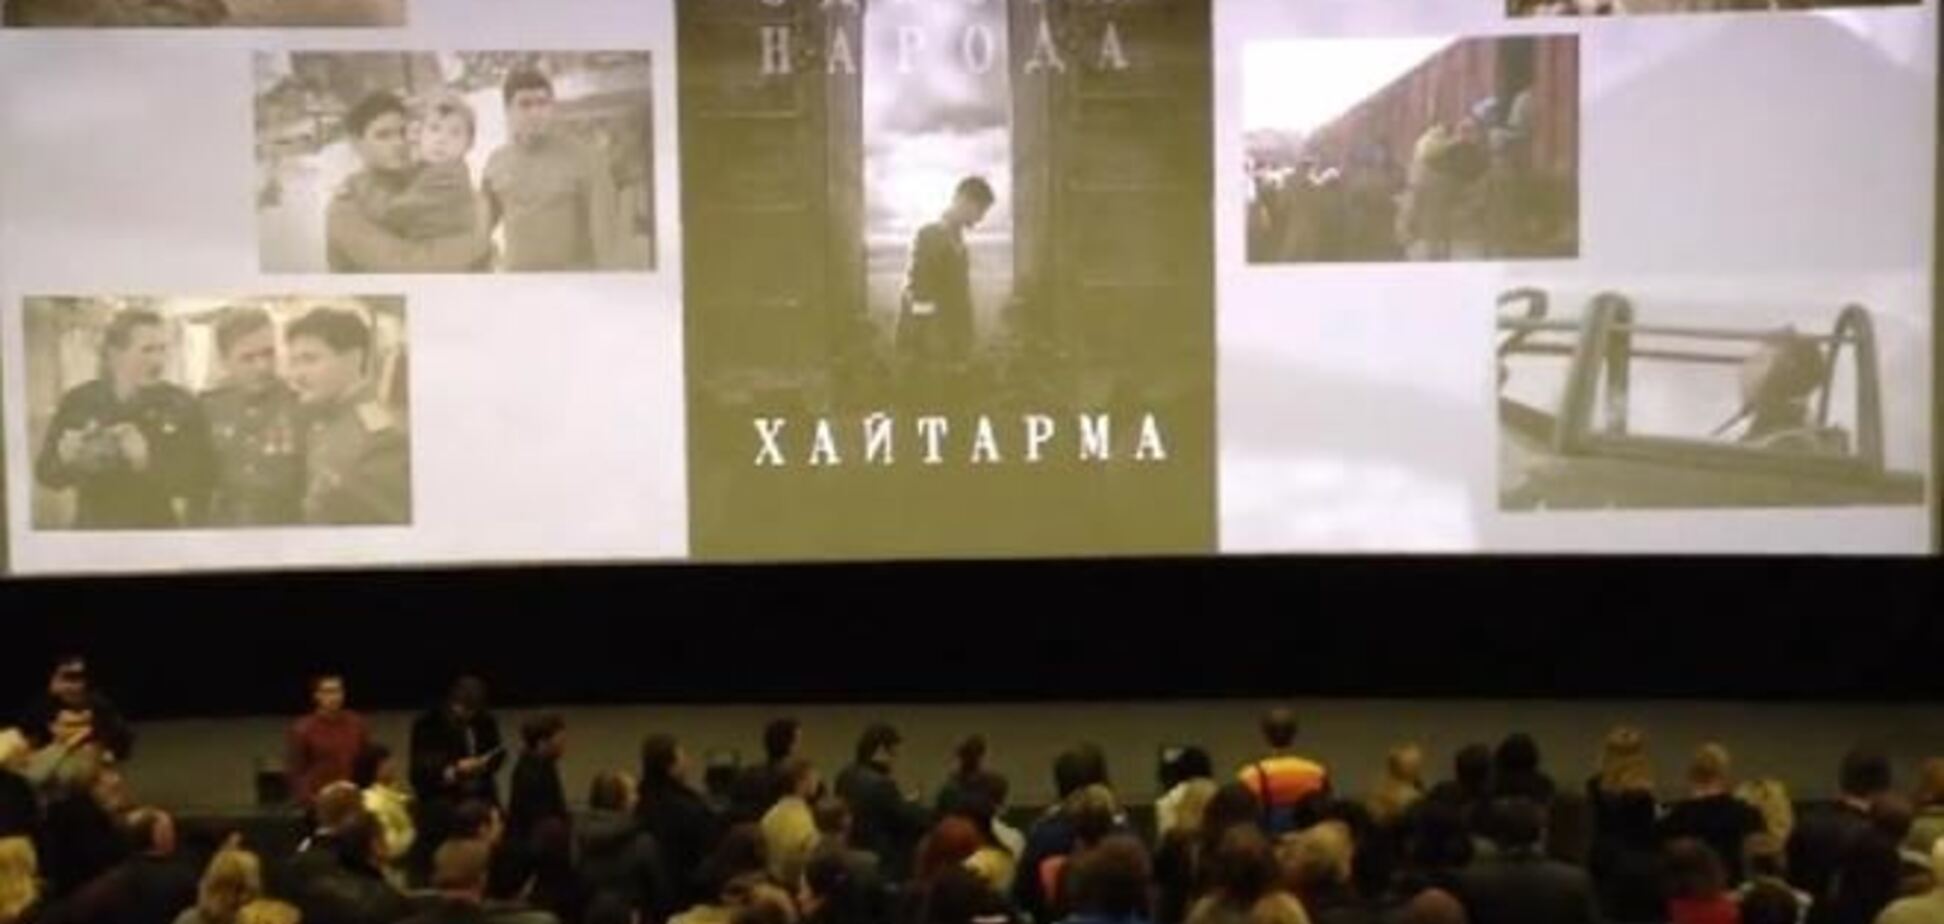 Після демонстрації фільму про кримських татар глядачі зі сльозами на очах співали гімн України